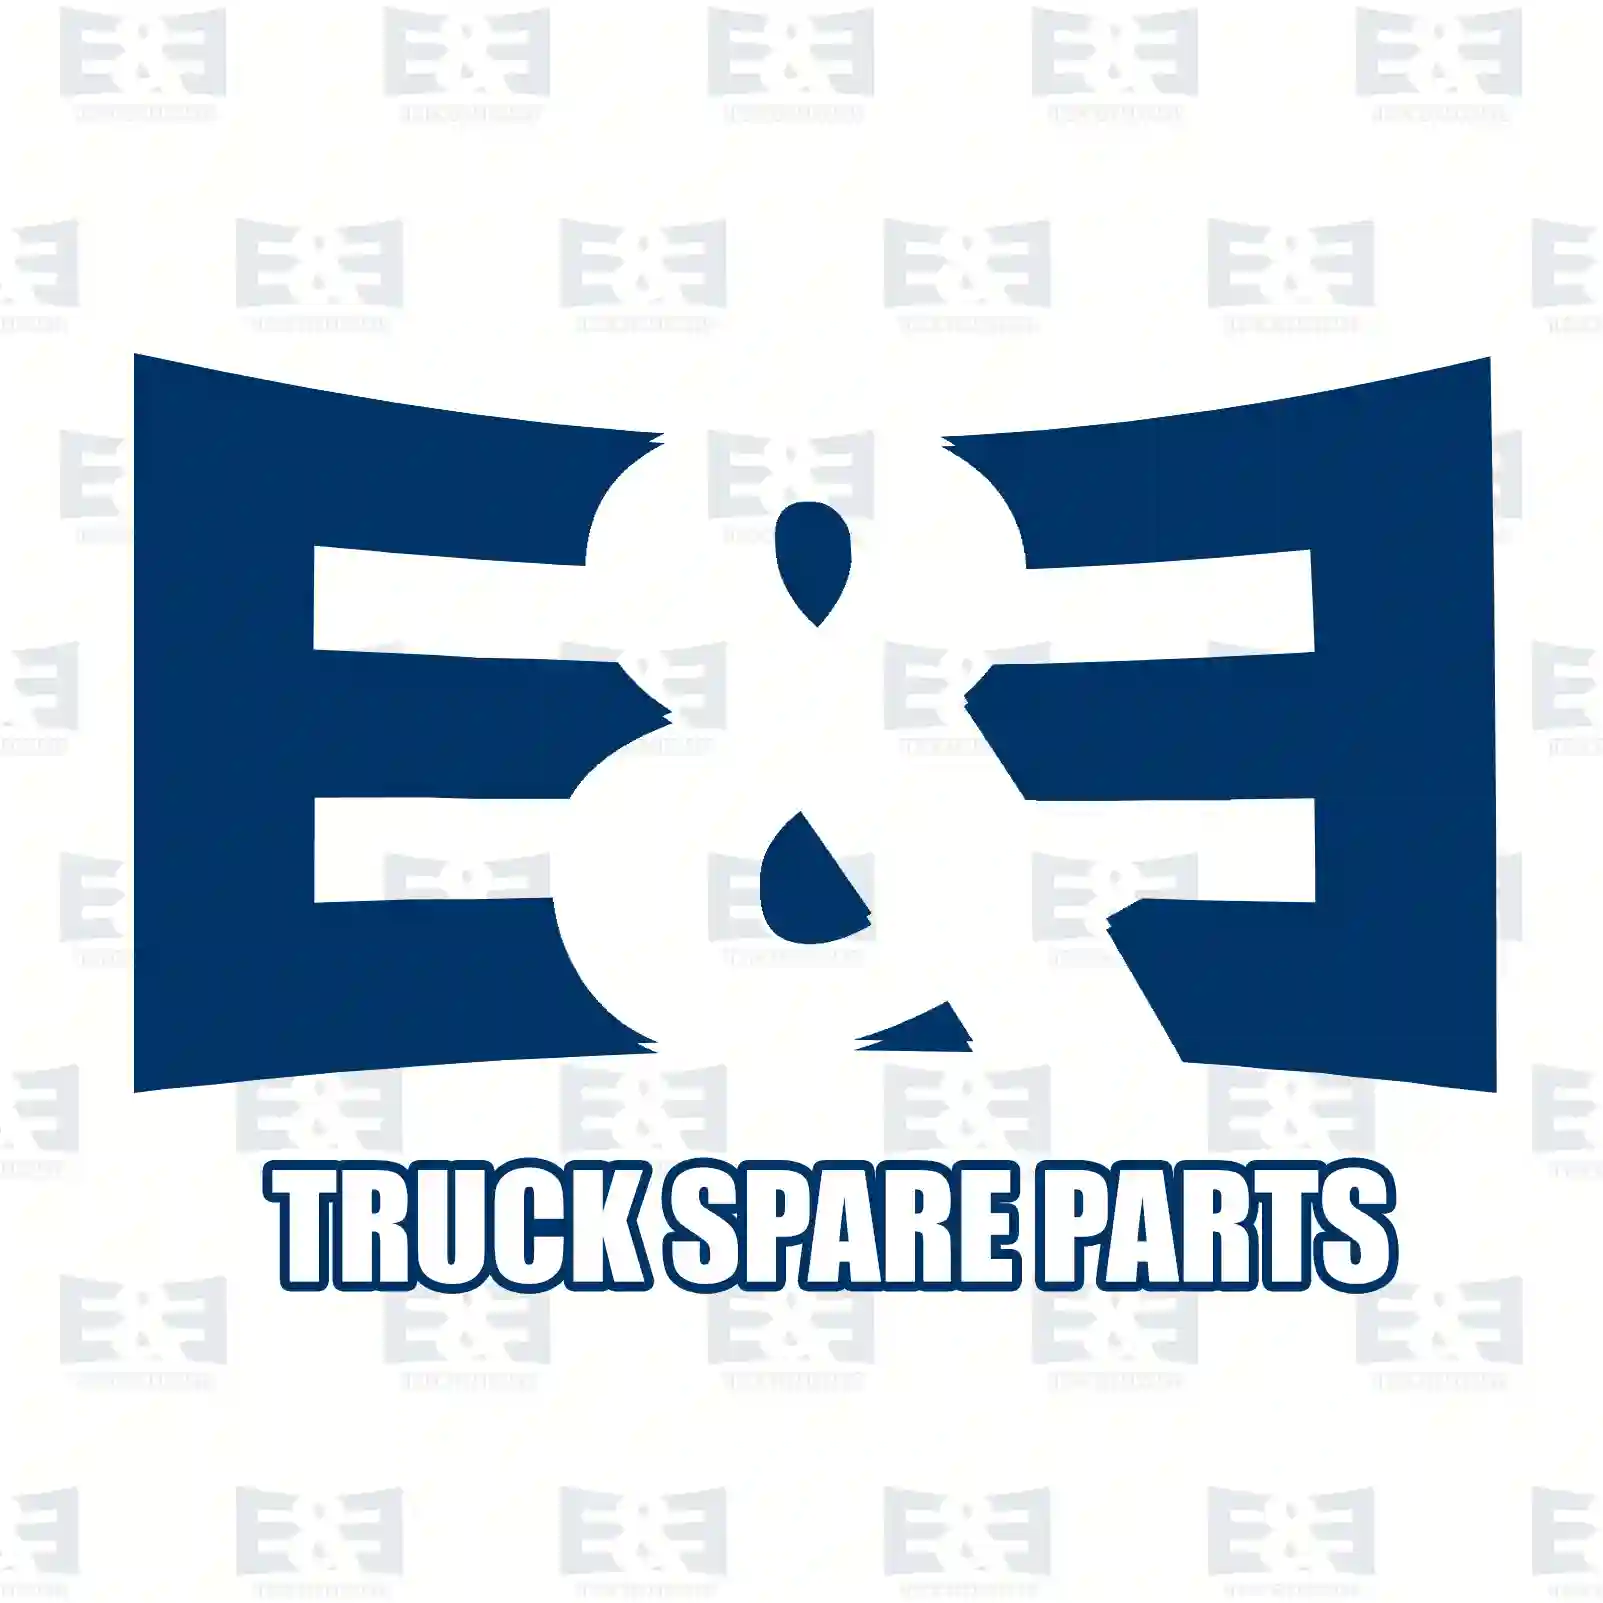 Propeller shaft, 2E2276866, 1067434, 1651634, 8134334 ||  2E2276866 E&E Truck Spare Parts | Truck Spare Parts, Auotomotive Spare Parts Propeller shaft, 2E2276866, 1067434, 1651634, 8134334 ||  2E2276866 E&E Truck Spare Parts | Truck Spare Parts, Auotomotive Spare Parts